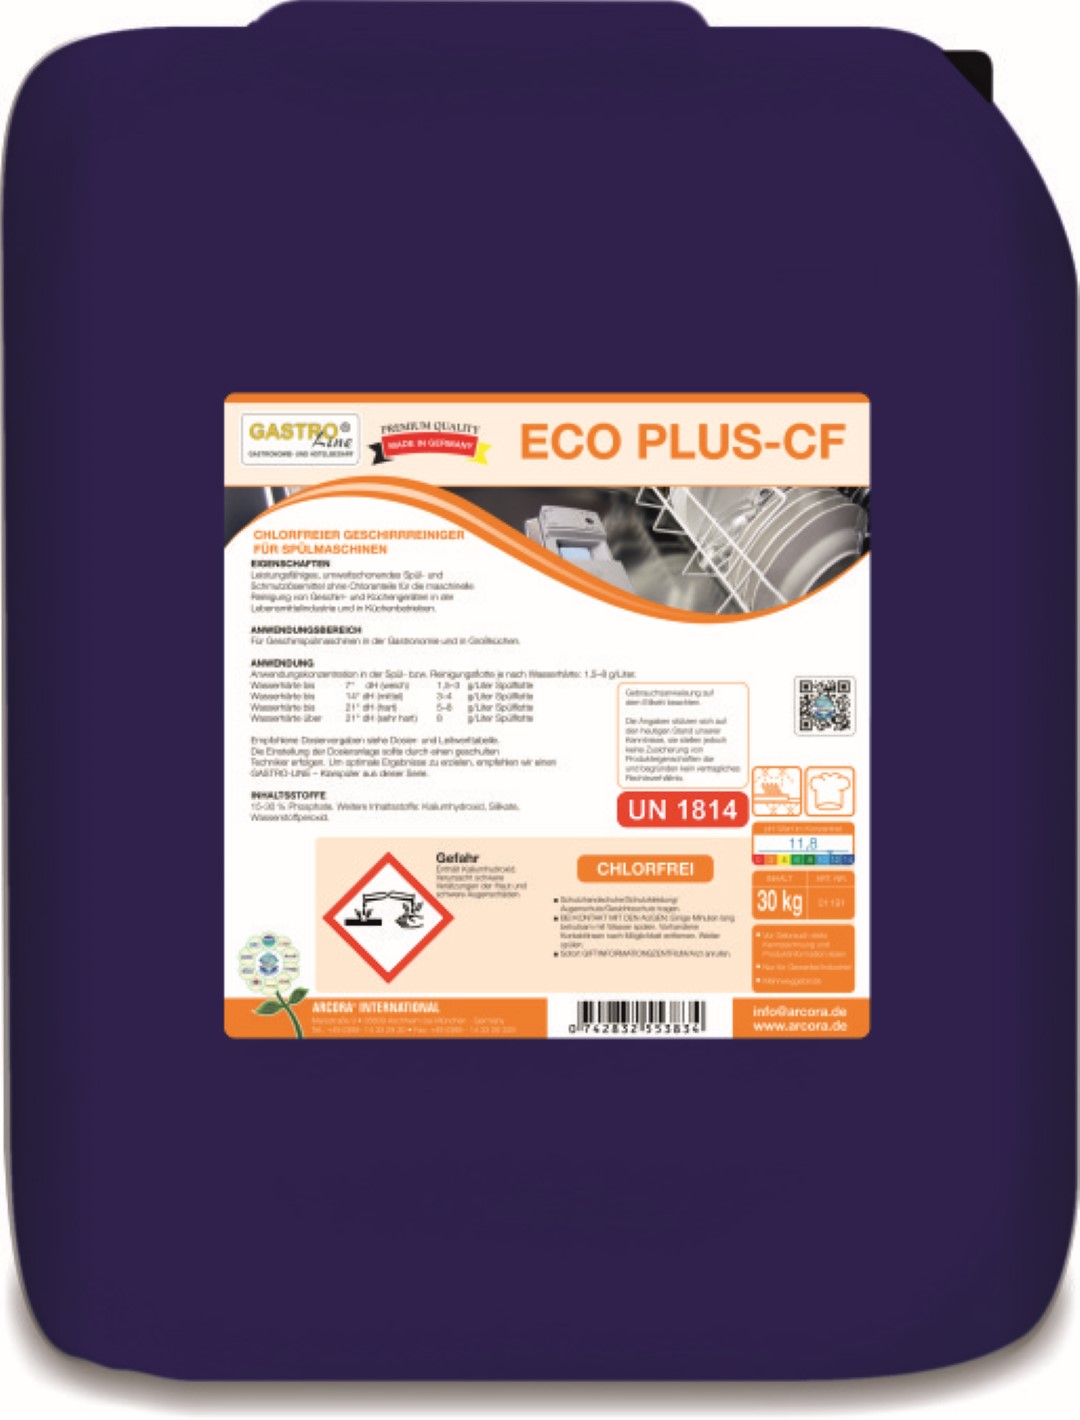  Eco Plus CF | Chlorfreier Geschirrreiniger | Spülmaschine | 12 KG